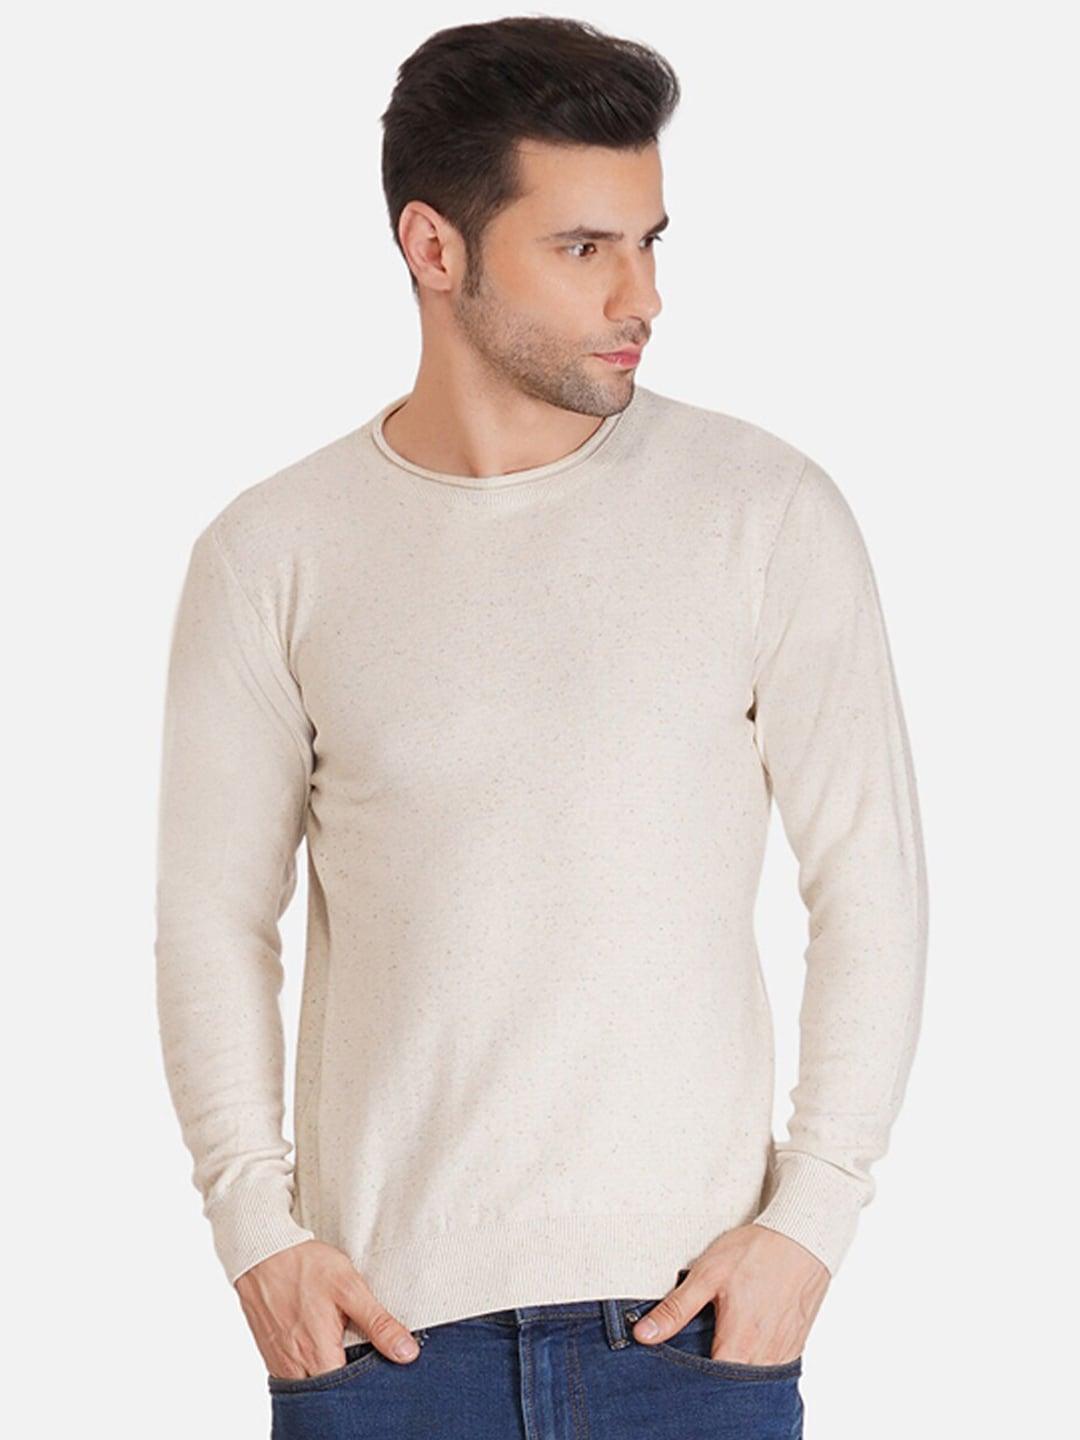 joe hazel men beige solid cotton pullover sweater